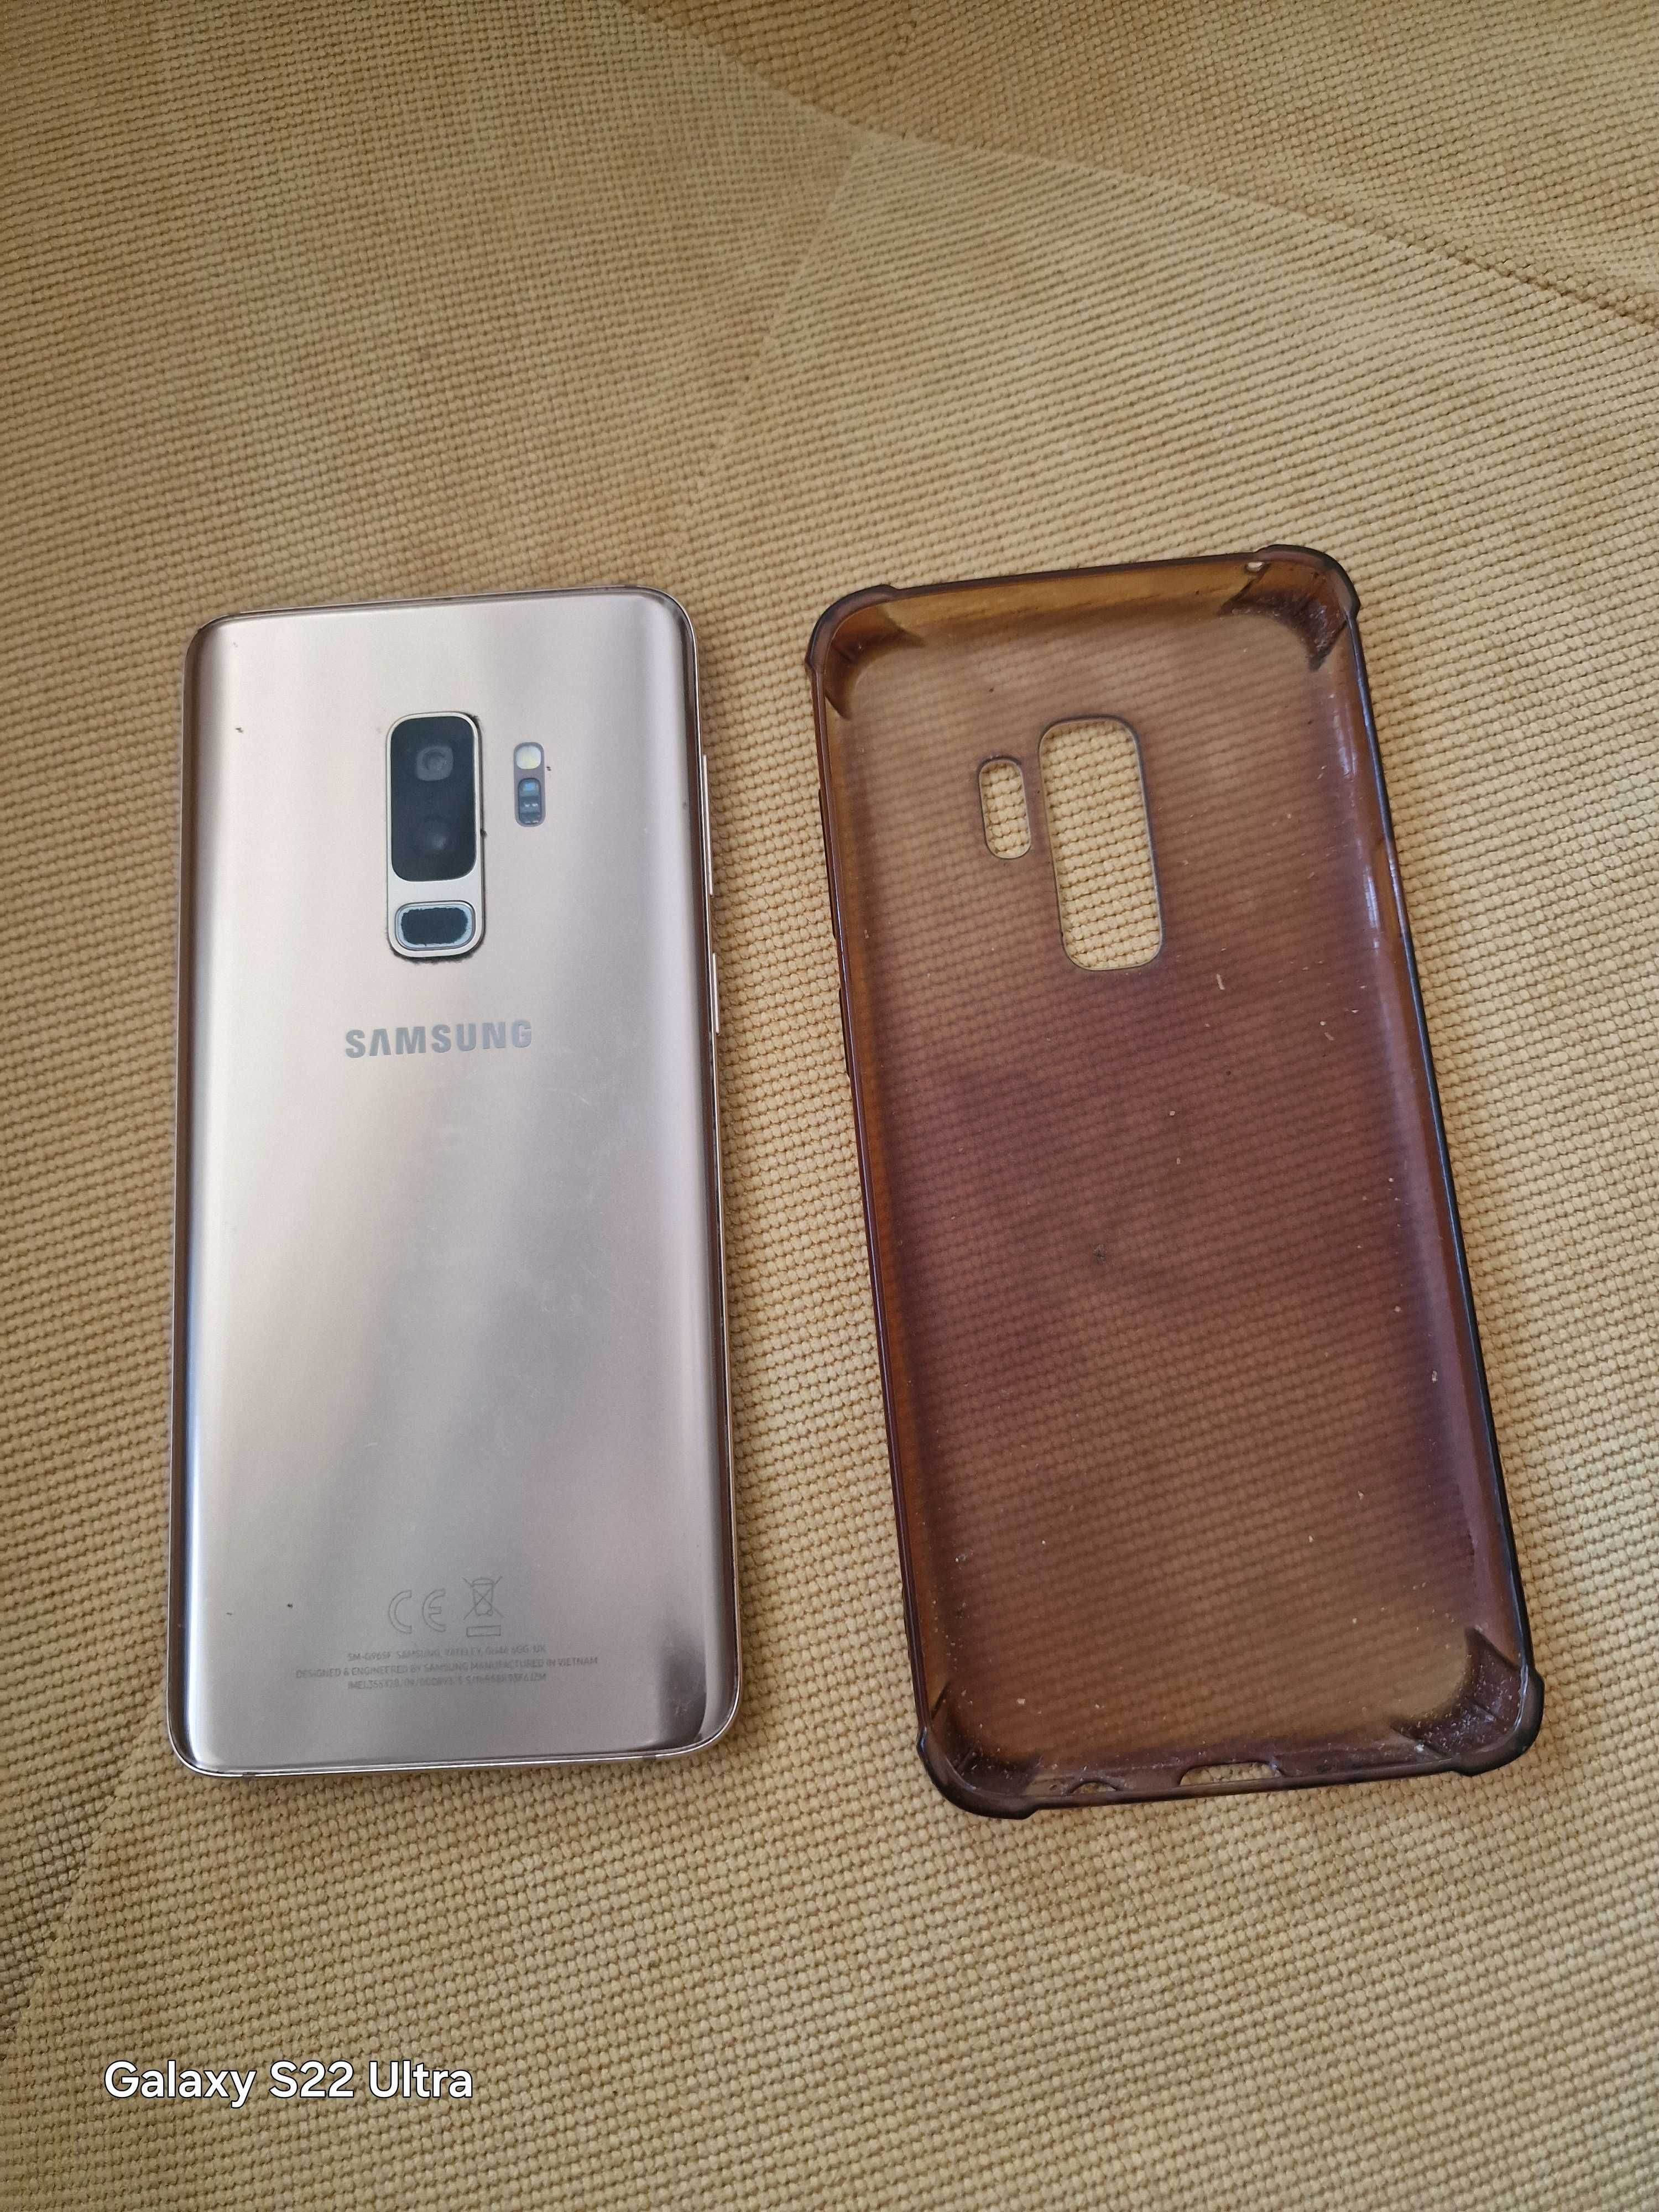 Samsung galaxy s9+